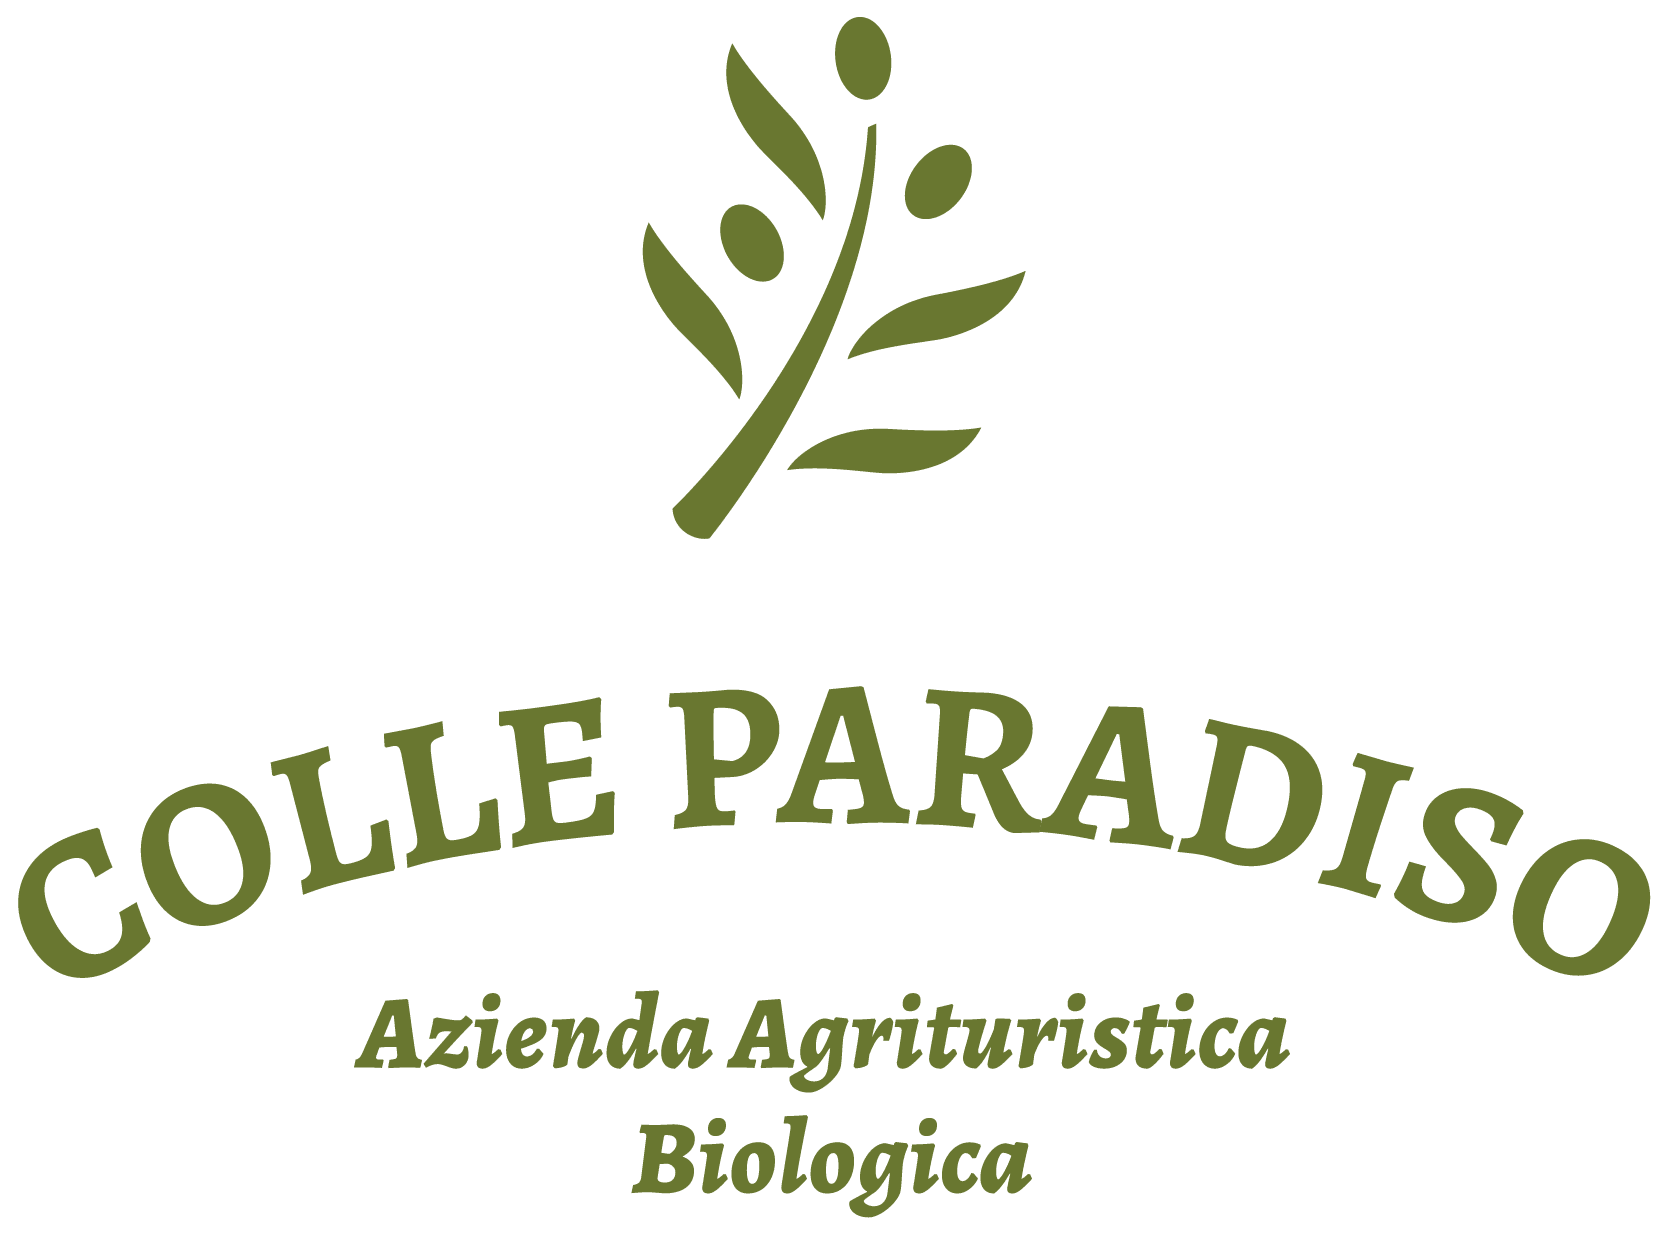 AZIENDA AGRITURISTICA BIOLOGICA COLLE PARADISO